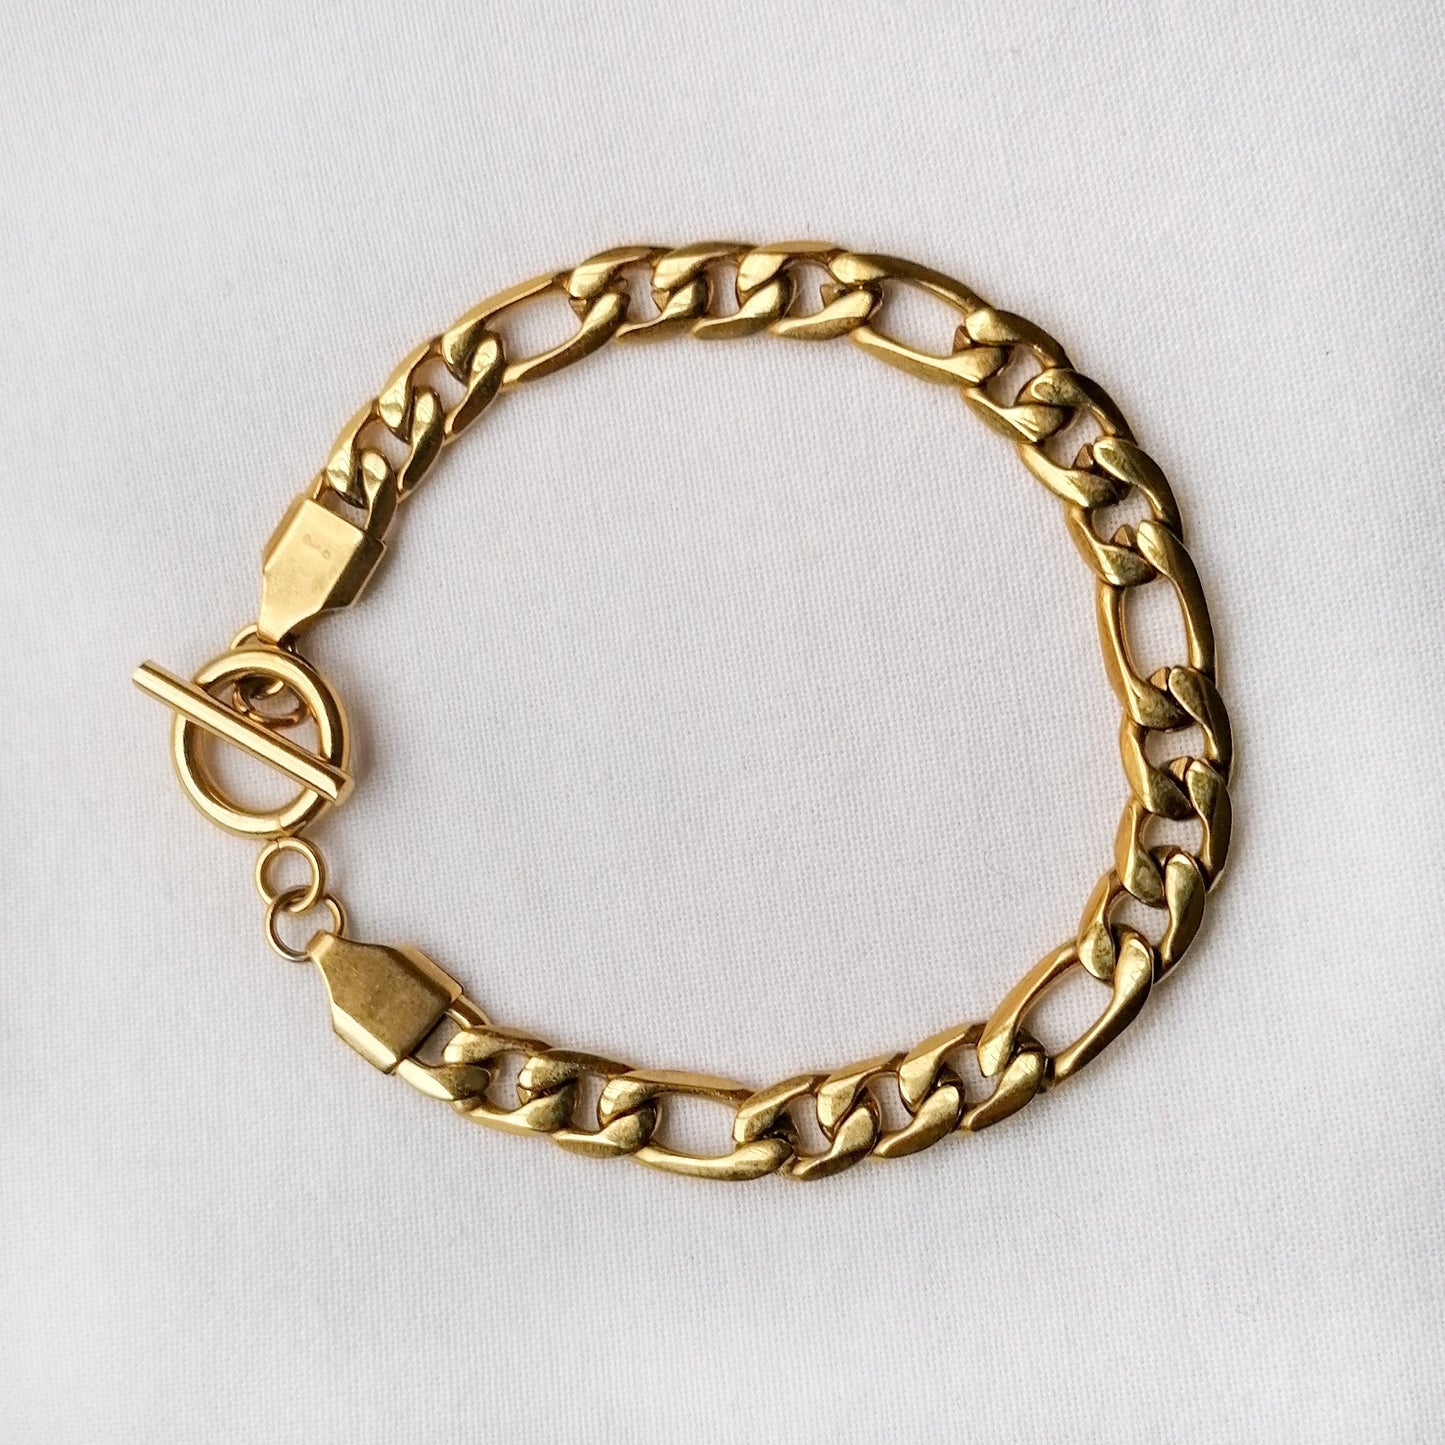 Odin bracelet